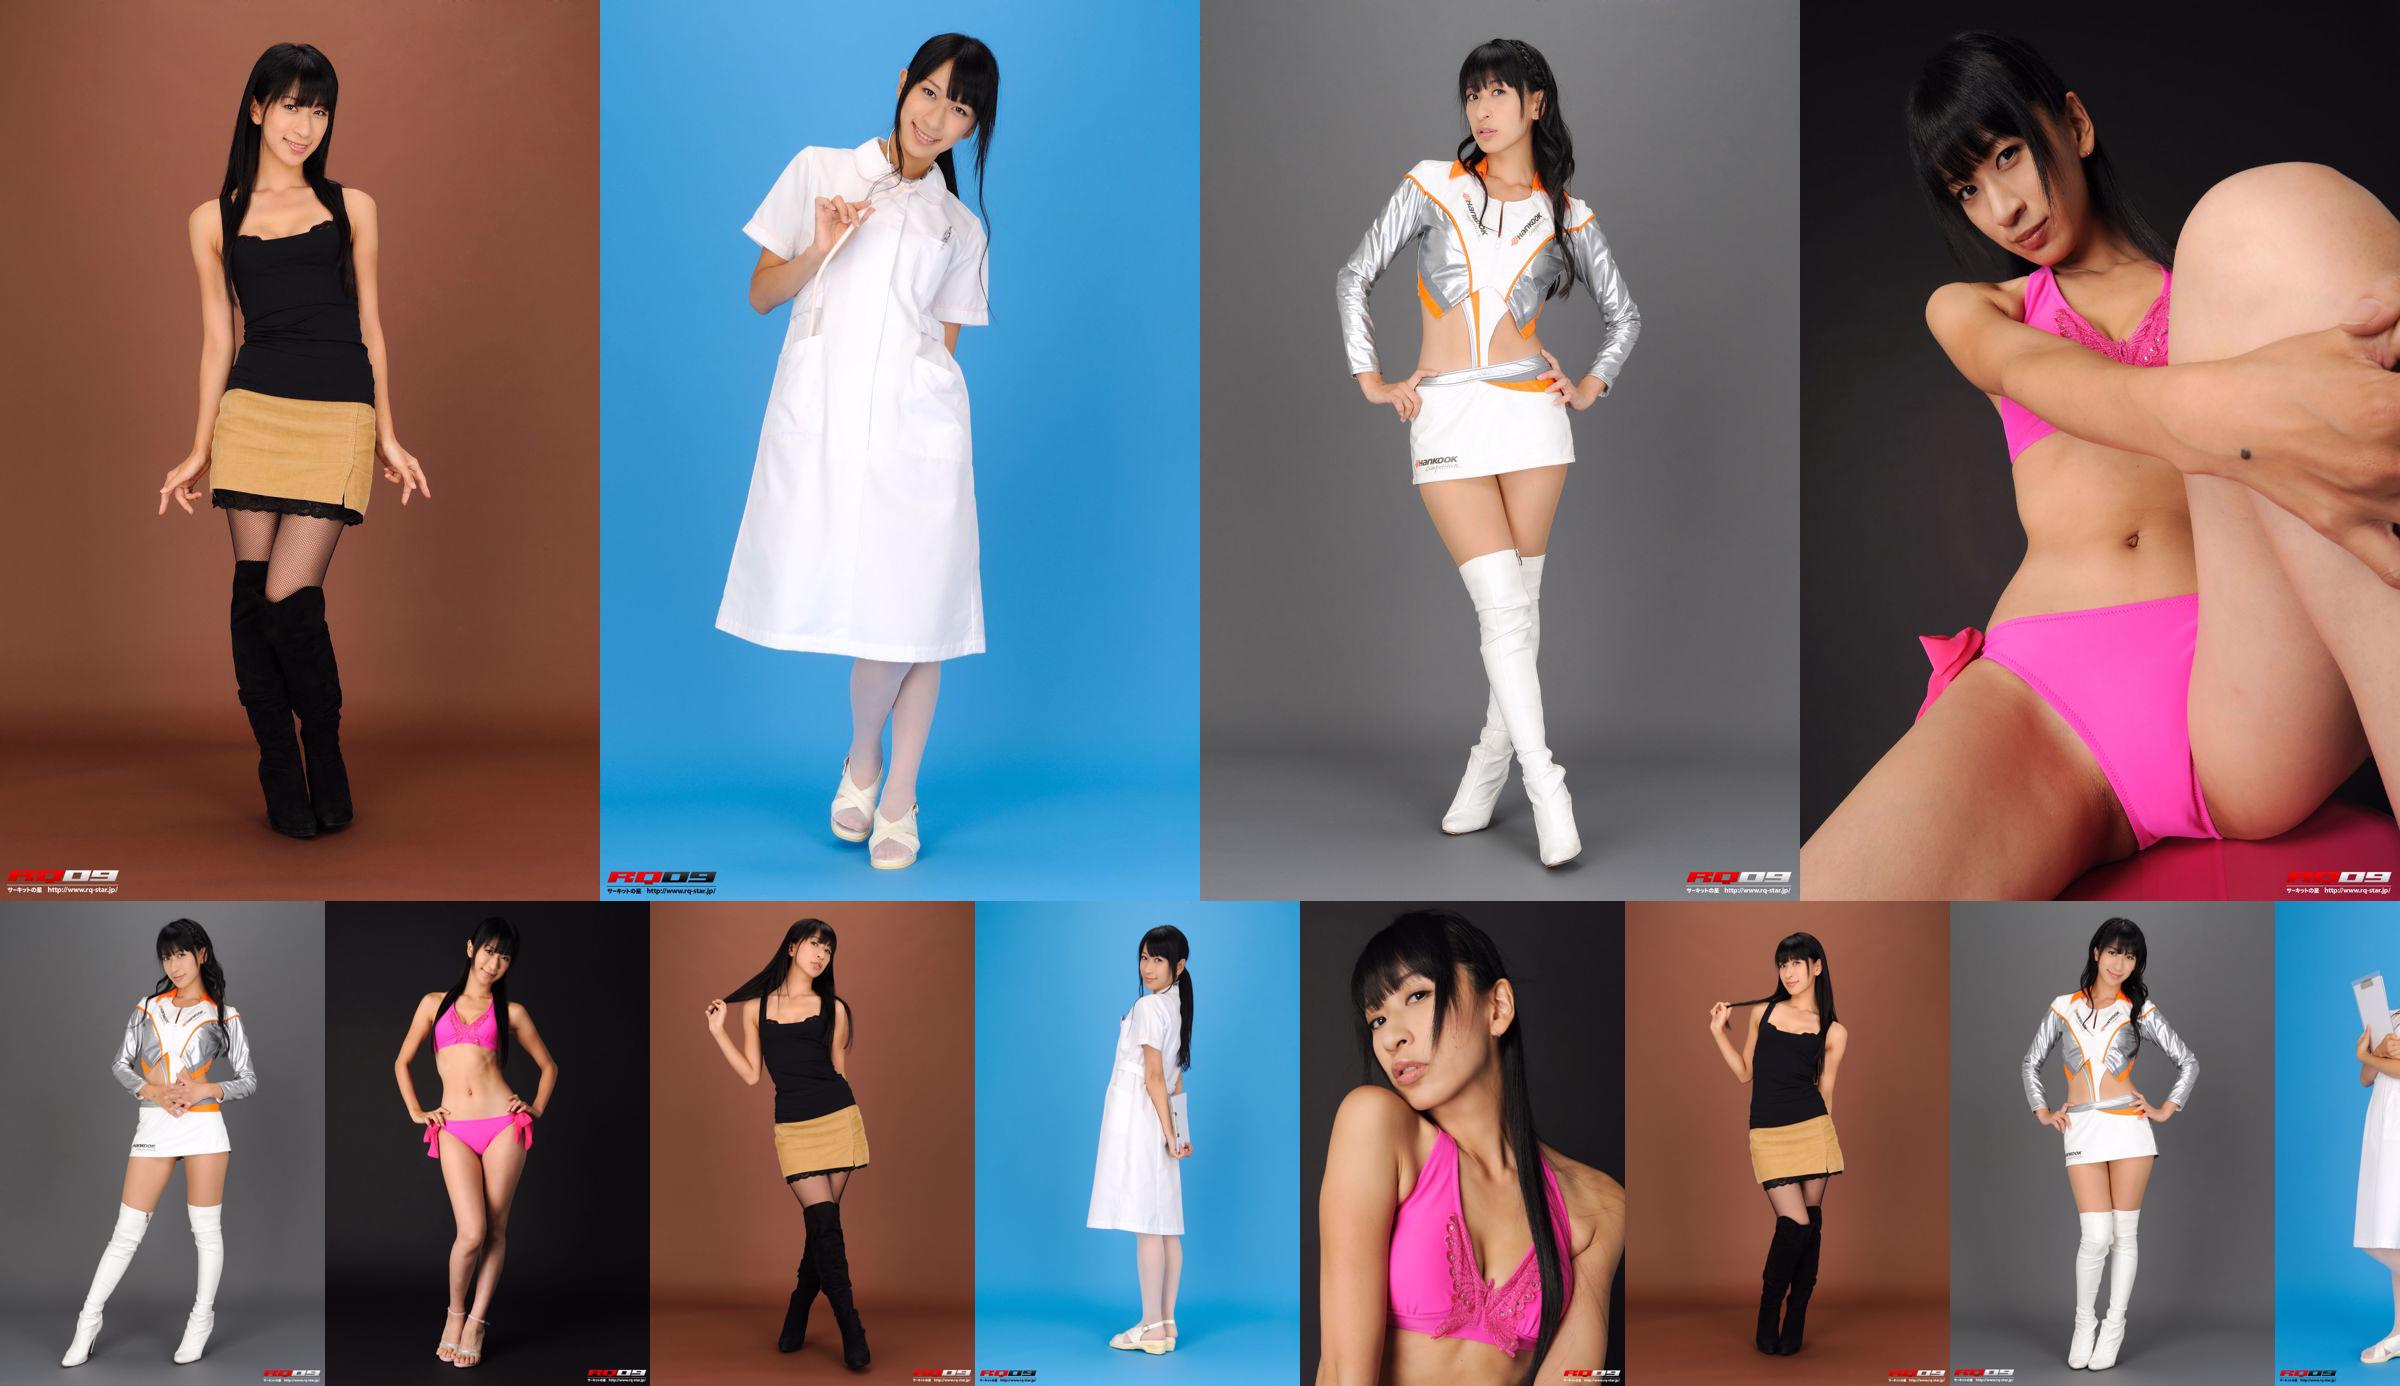 [RQ-STAR] NO.00213 Hiroko Yoshino Купальный костюм Hiroko Yoshino - розовый No.040e20 Страница 3